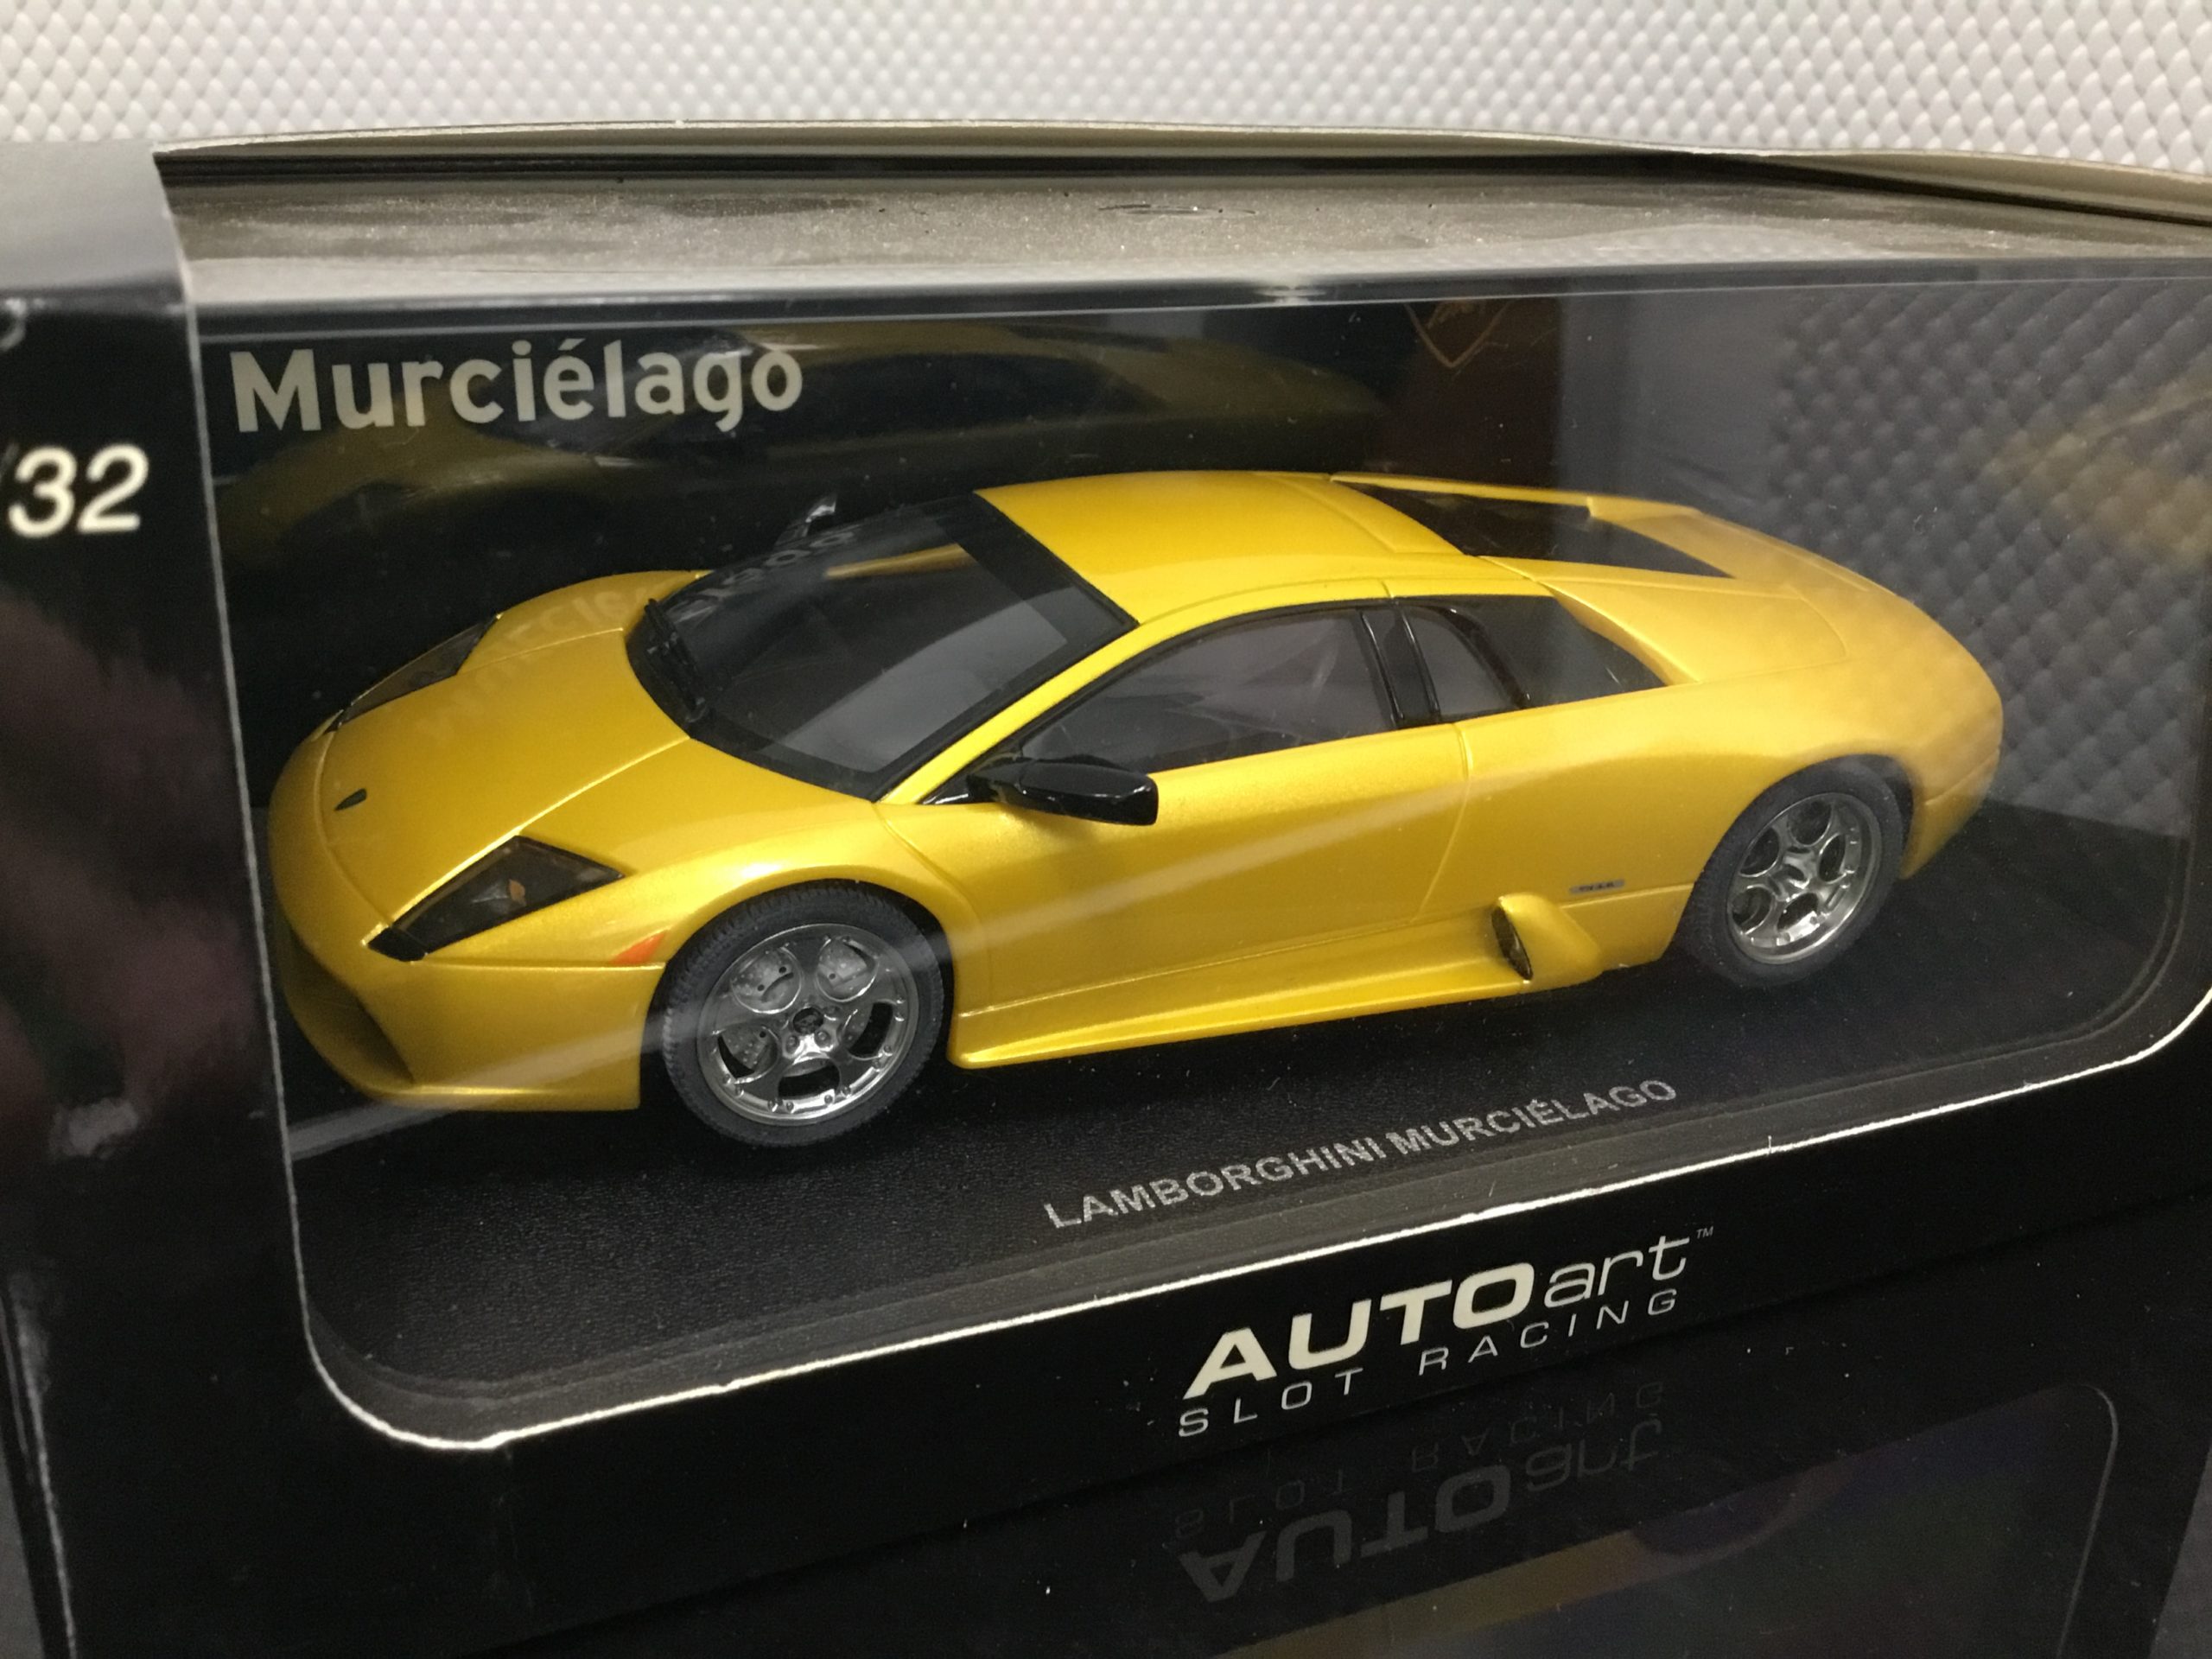 Neuware/Ovp AutoArt 13023 Lamborghini Murcielago metallic green Slotcar 1:32 